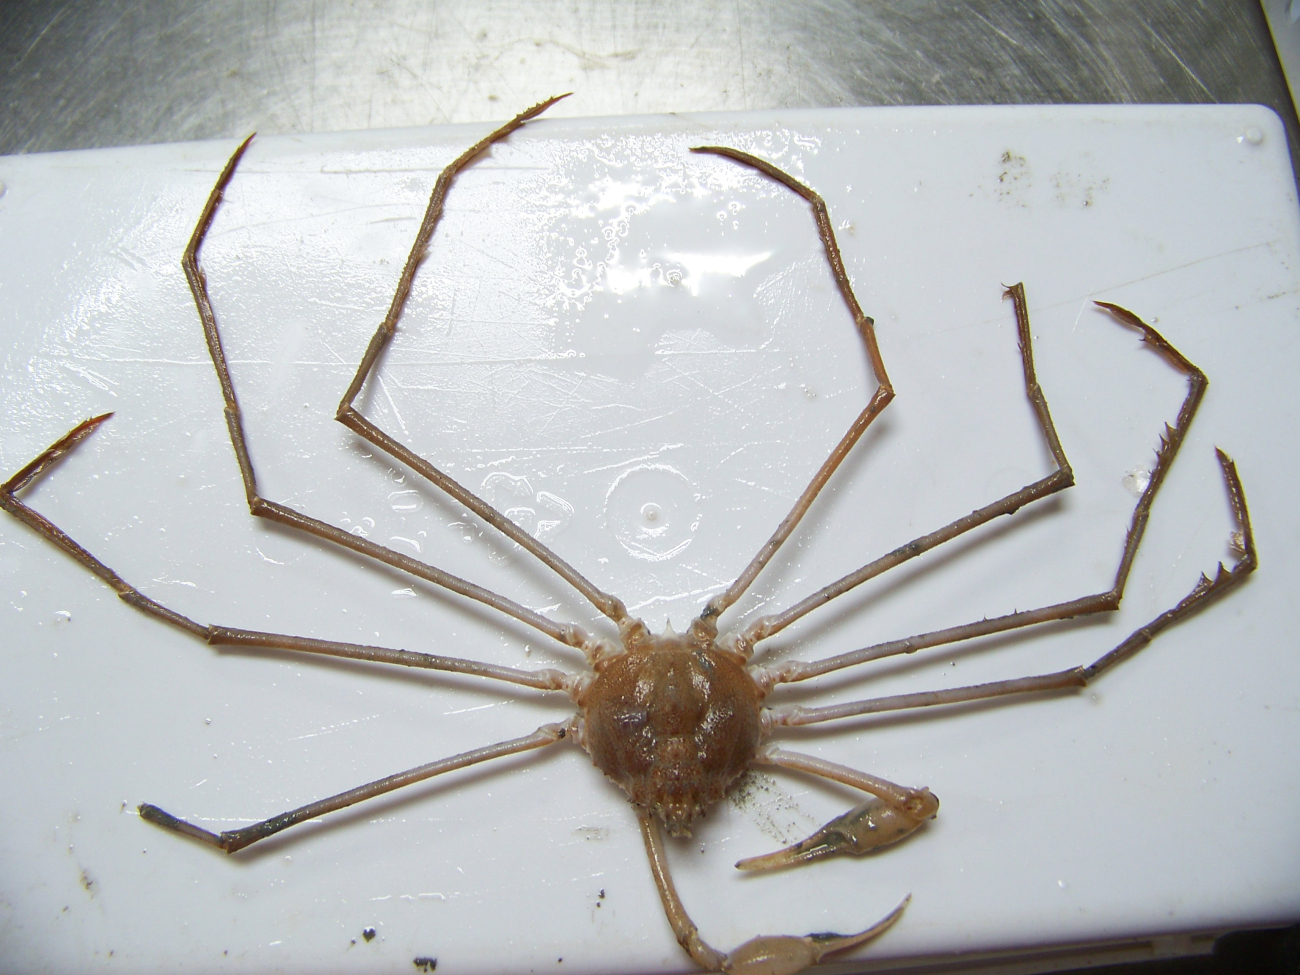 A stilt spider crab (Anasimus istus Rathbun)